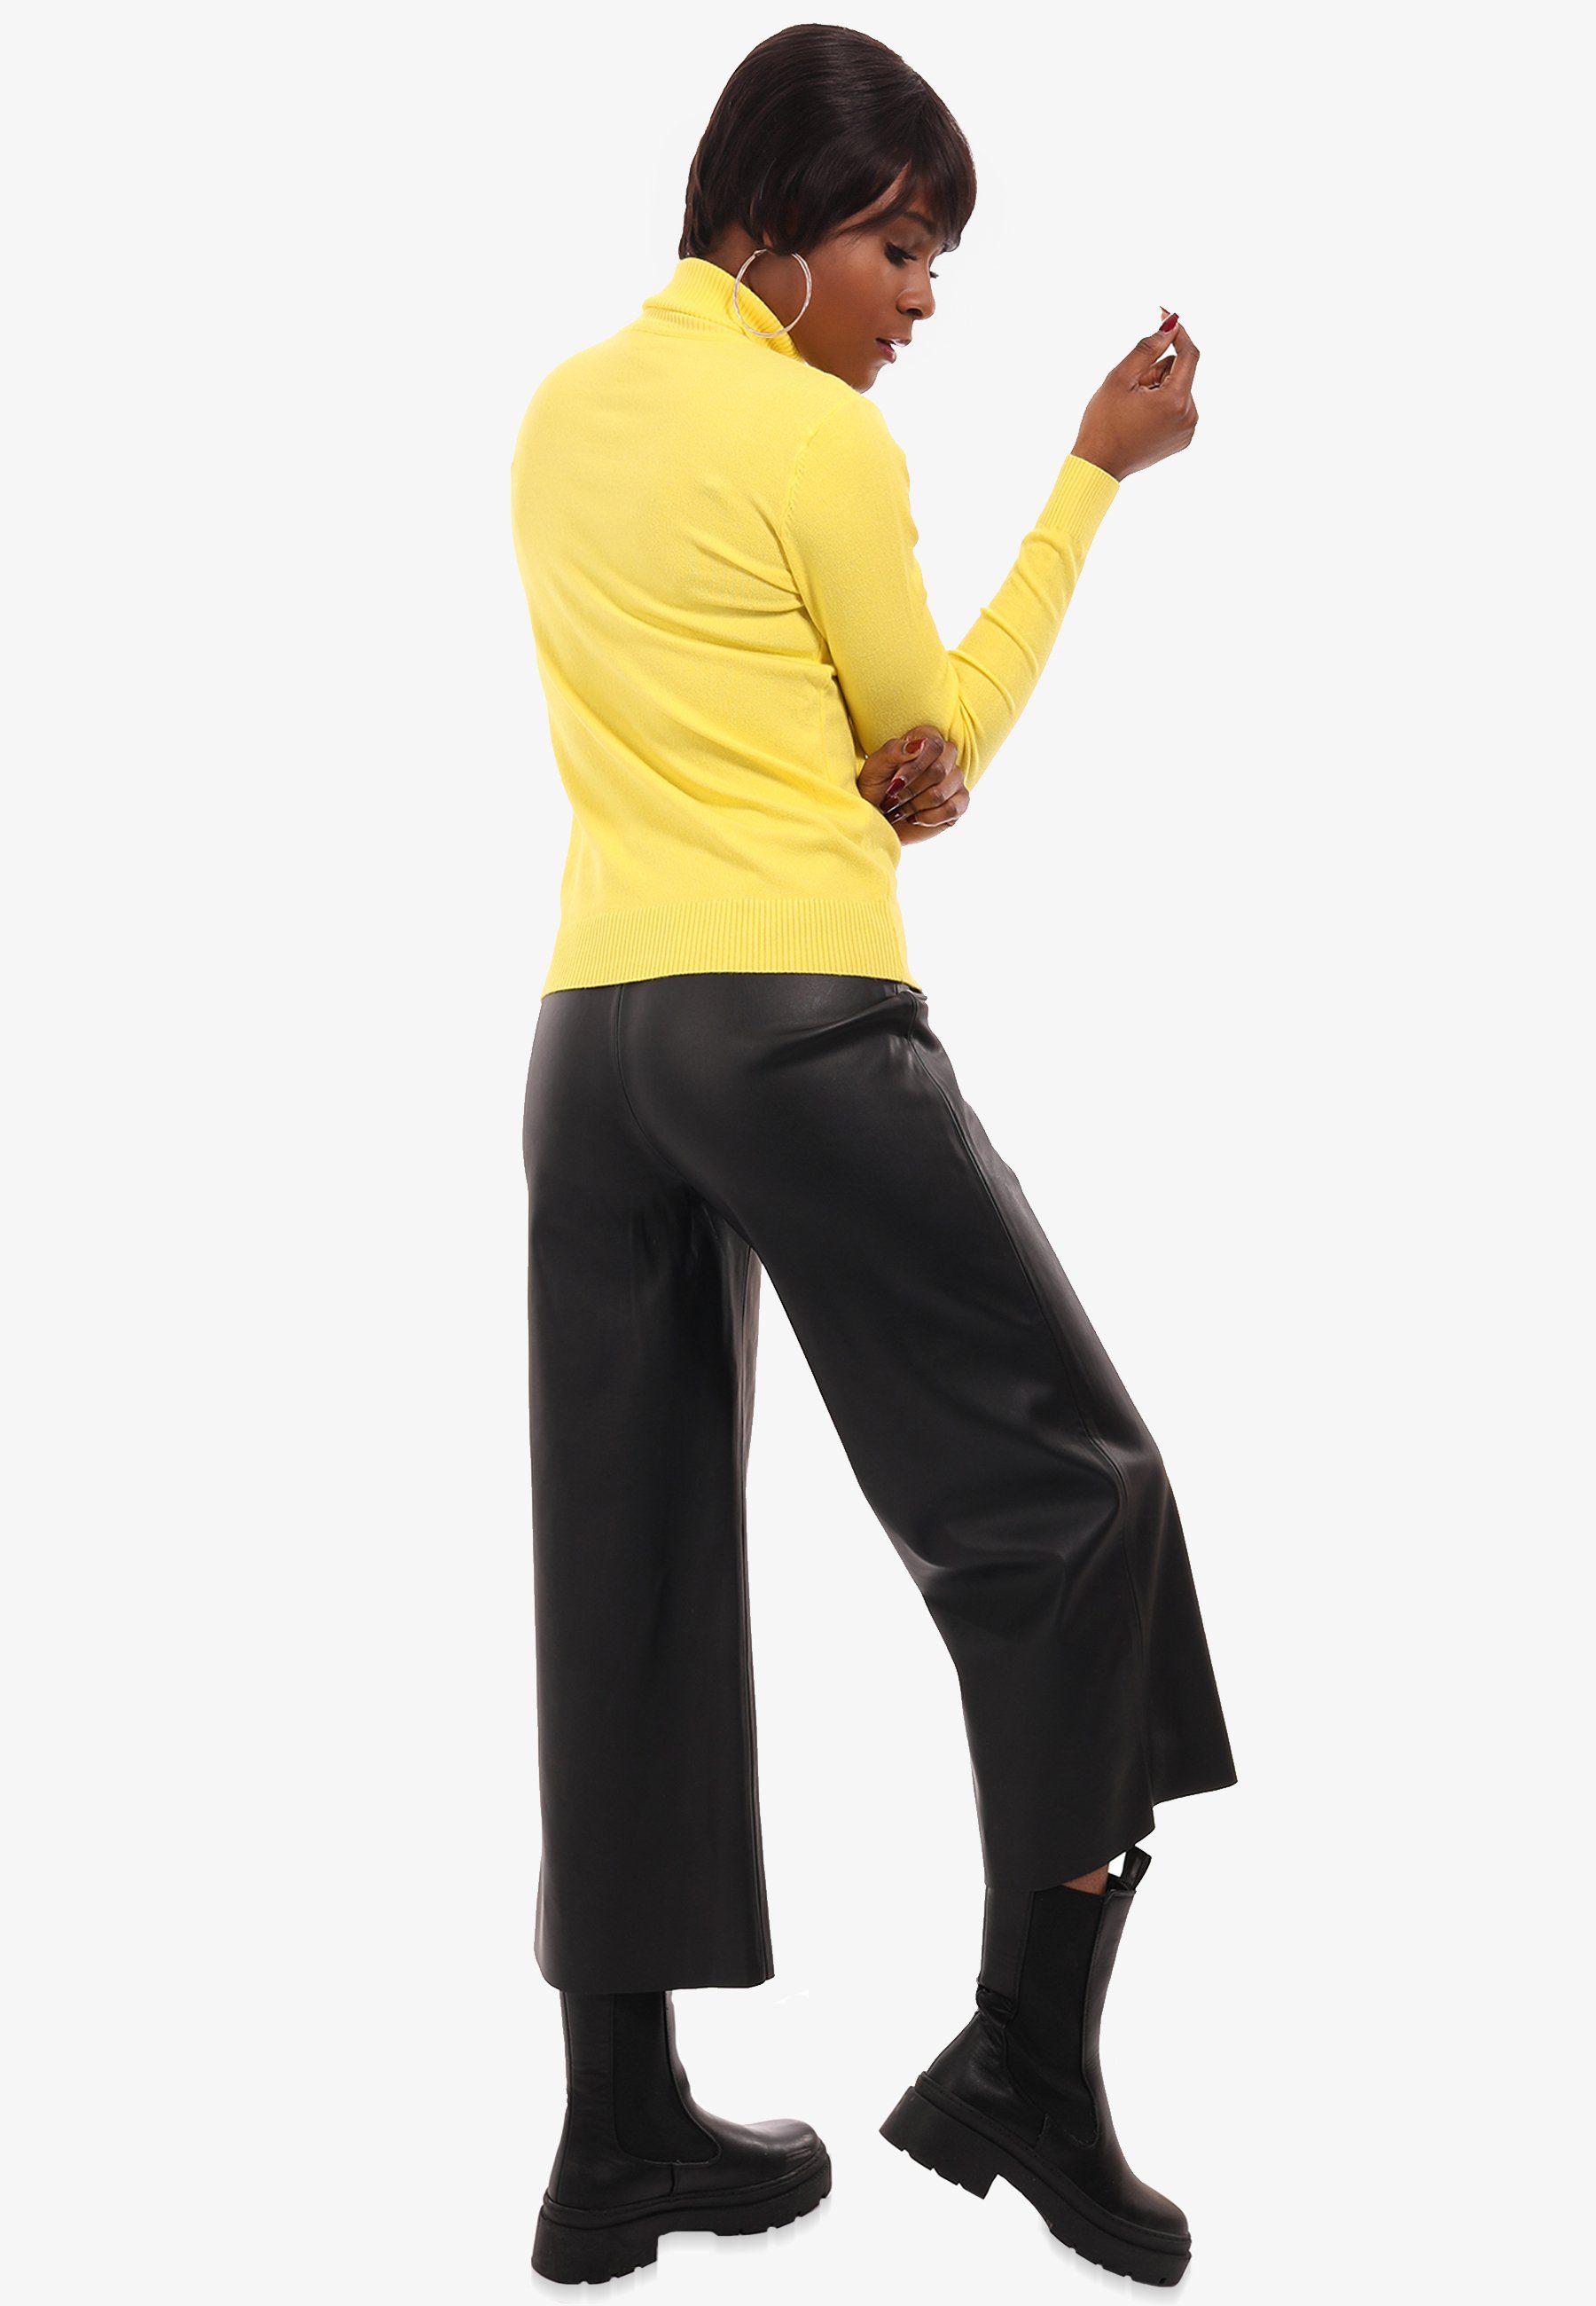 YC Fashion & Style Rolli Casual Basic Elegant Rollkragen Rollkragenpullover gelb casual Pullover (1-tlg) Freizeit